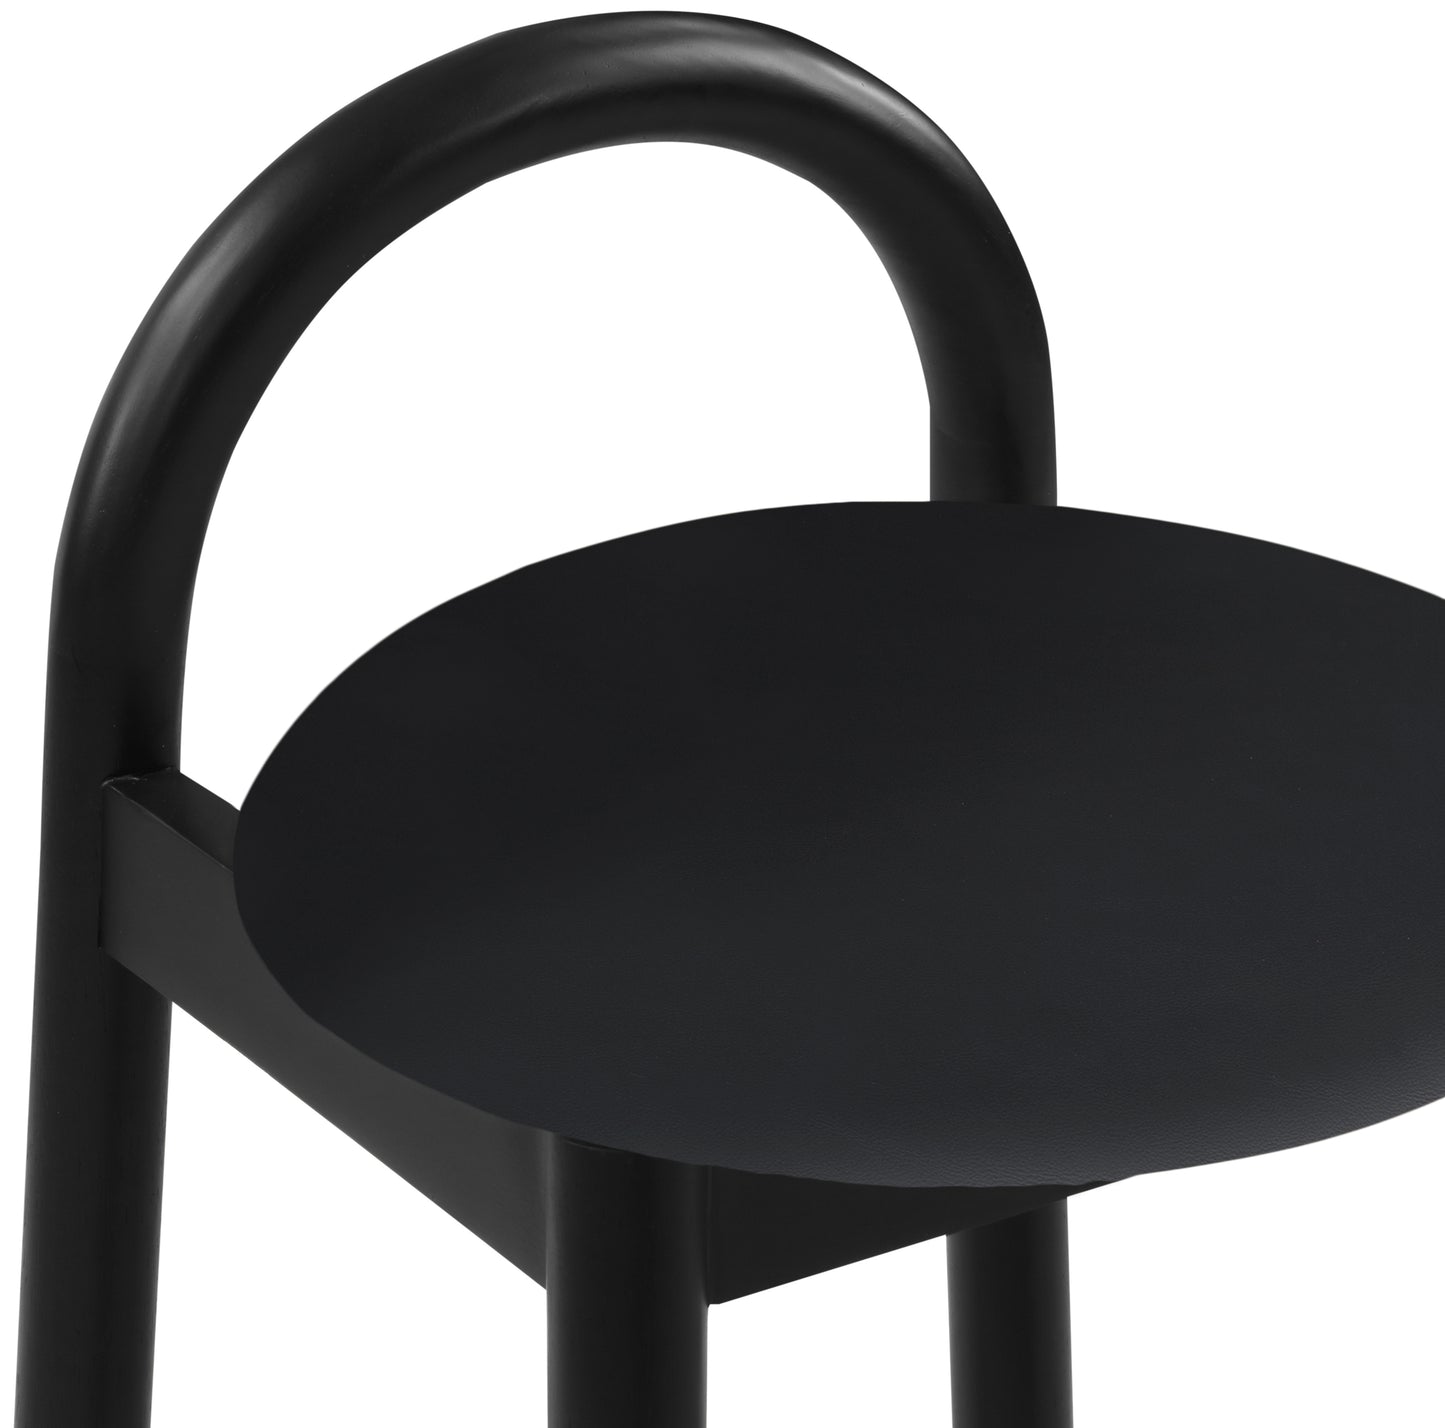 heidi black faux leather stool c